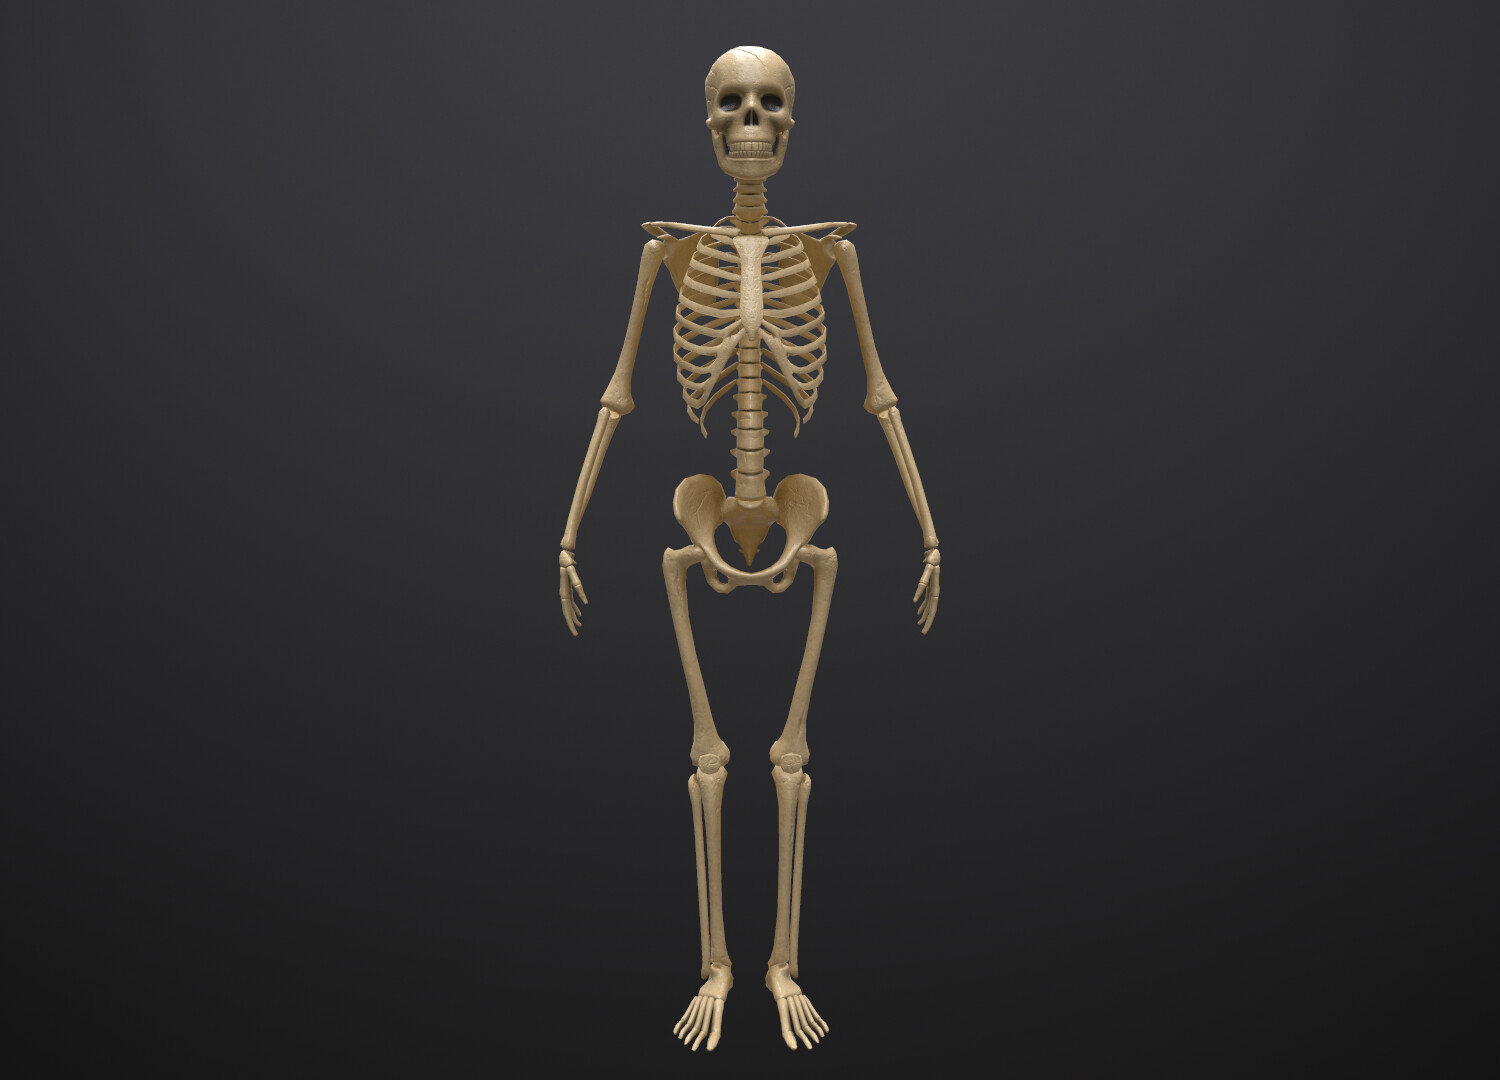 Ткань скелета человека. Скелет стоит прямо на черном фоне. Мерседес скелет.